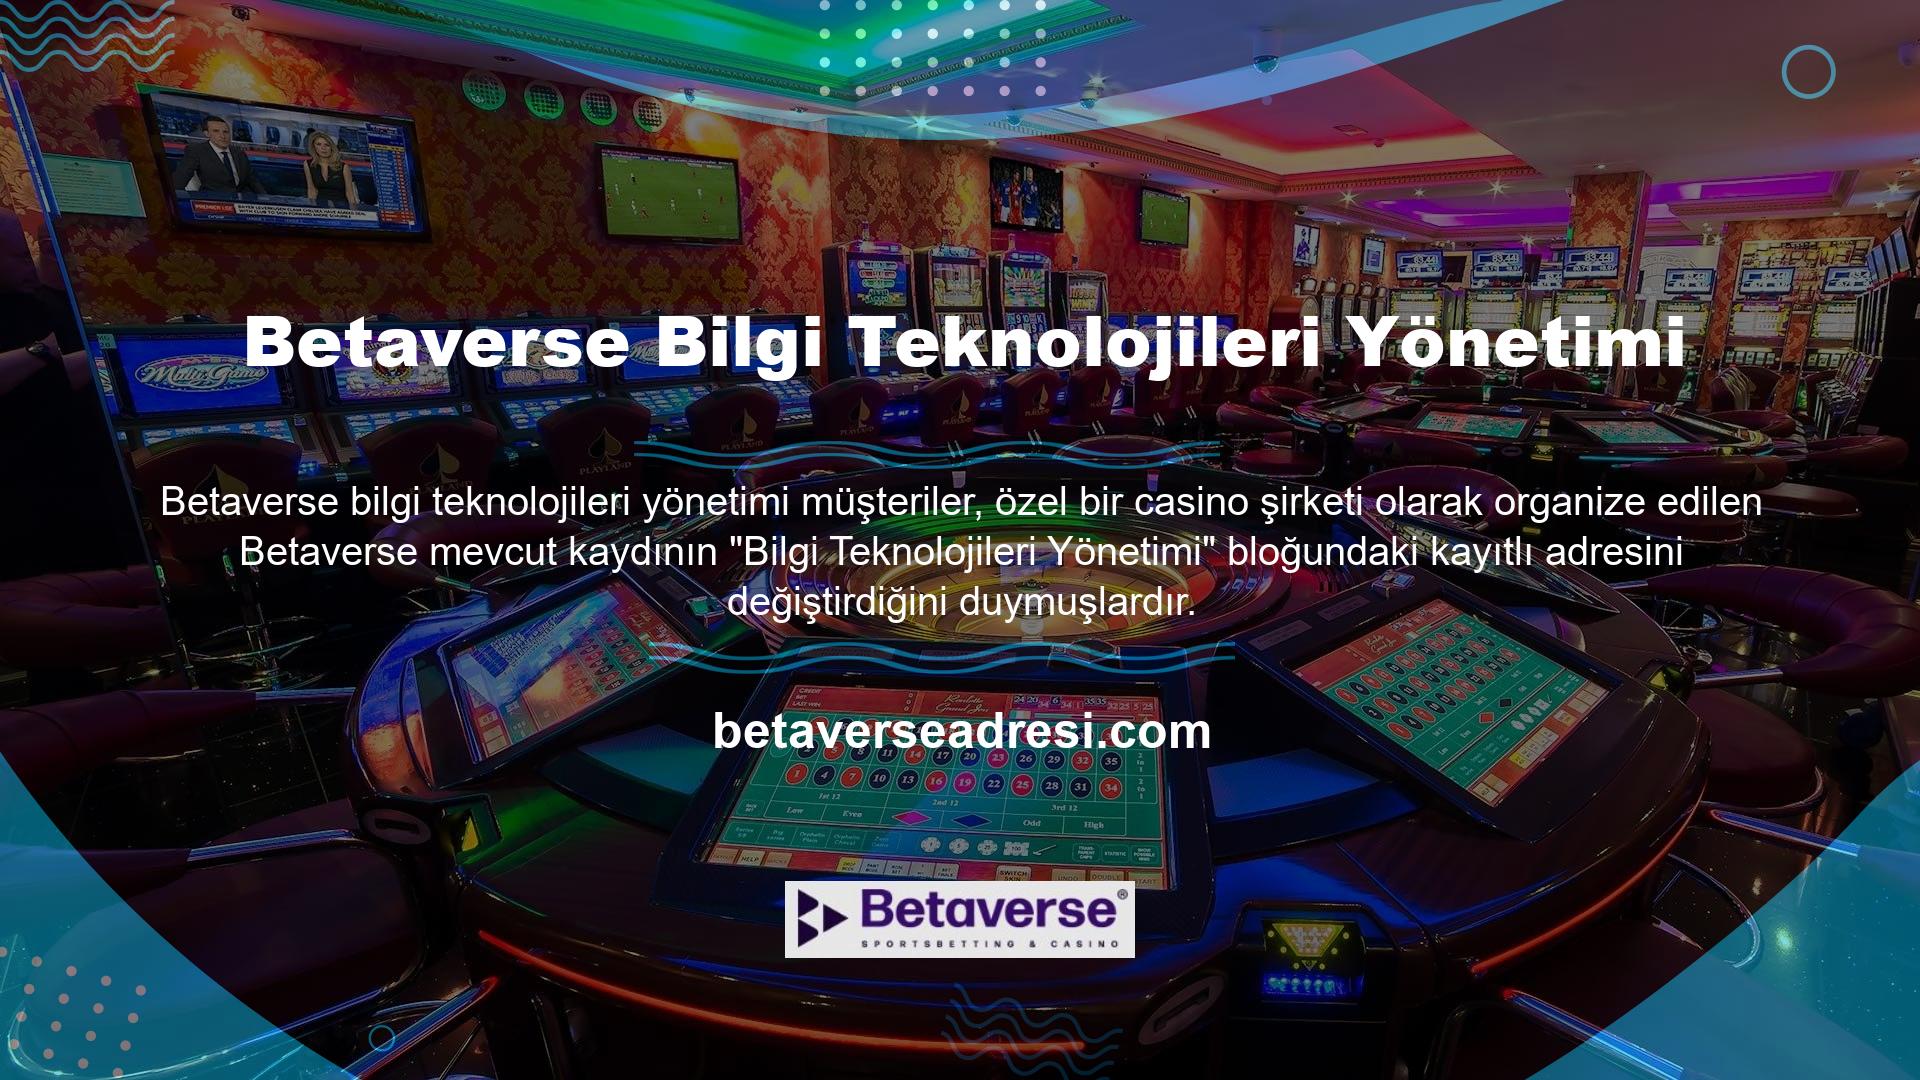 Betaverse, Türkiye'de yasal olarak faaliyet göstermeye çalışan casino siteleriyle ilgili sorunlardan da etkilendi